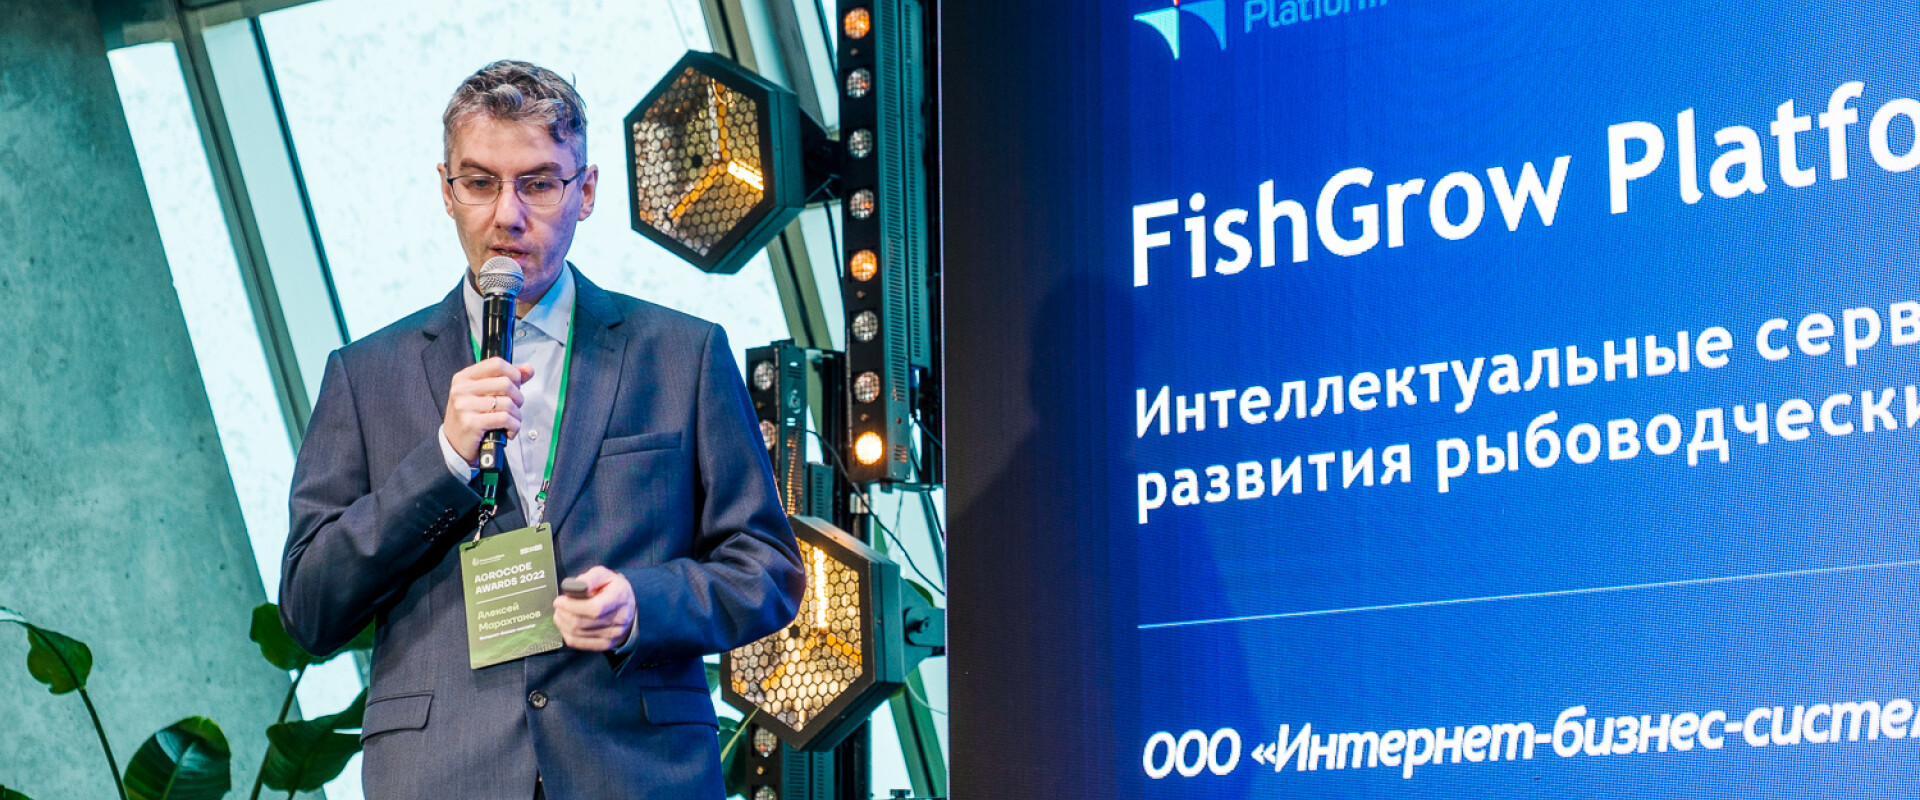 Финалист престижной премии AgroСode Awards - проект FishGrow Platform, разработанный МИП ПетрГУ Интернет-бизнес-системы